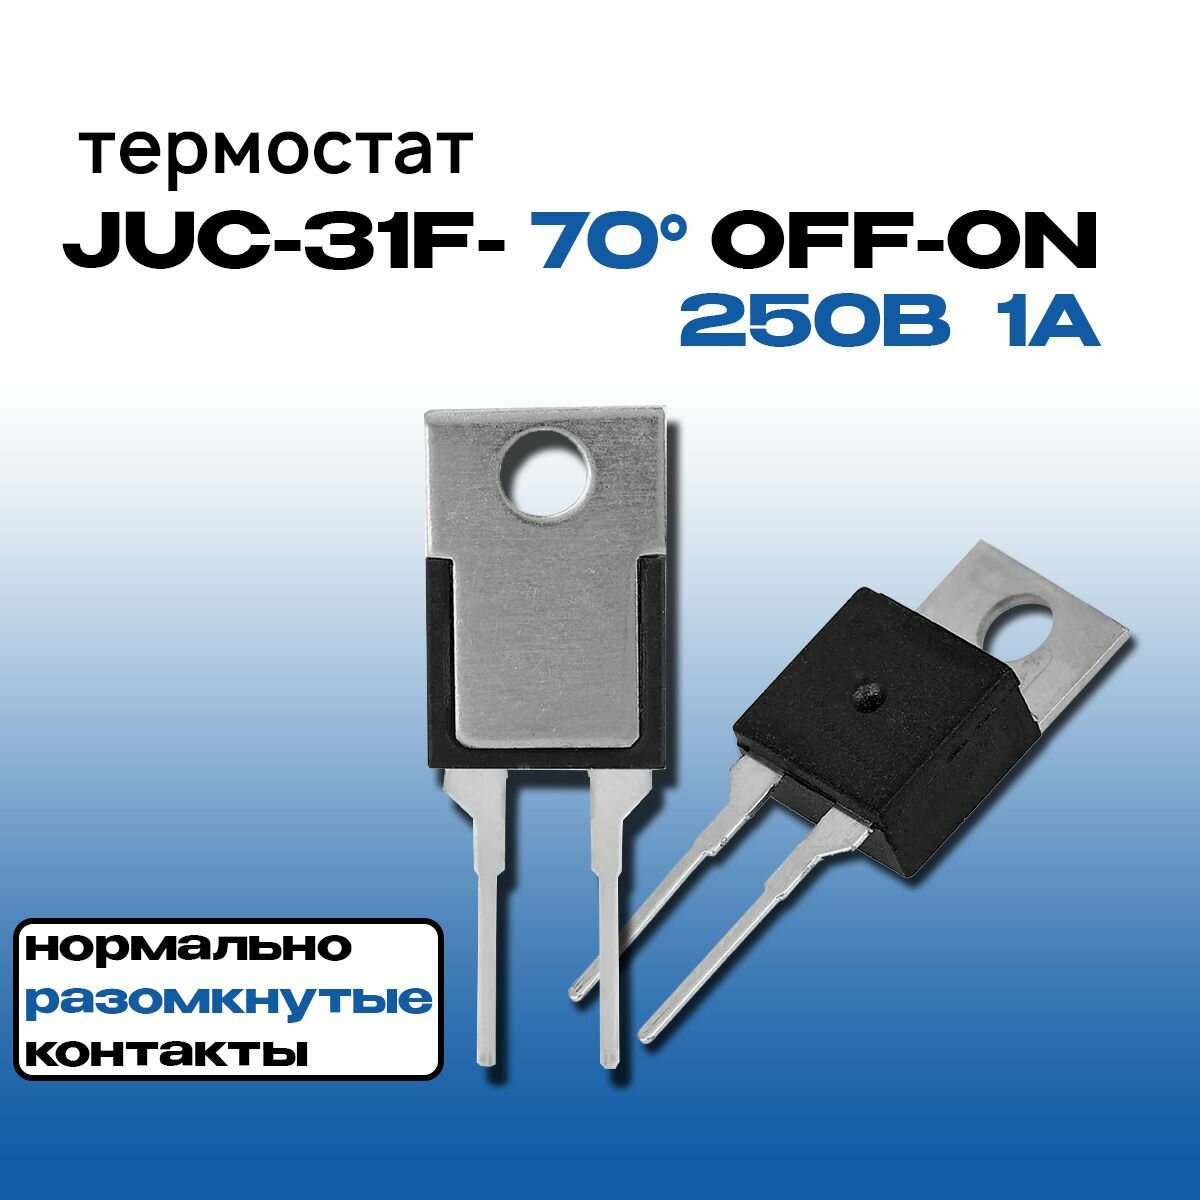 Термостат (термореле) JUC-31F-70 OFF-ON TO-220 250В 1А